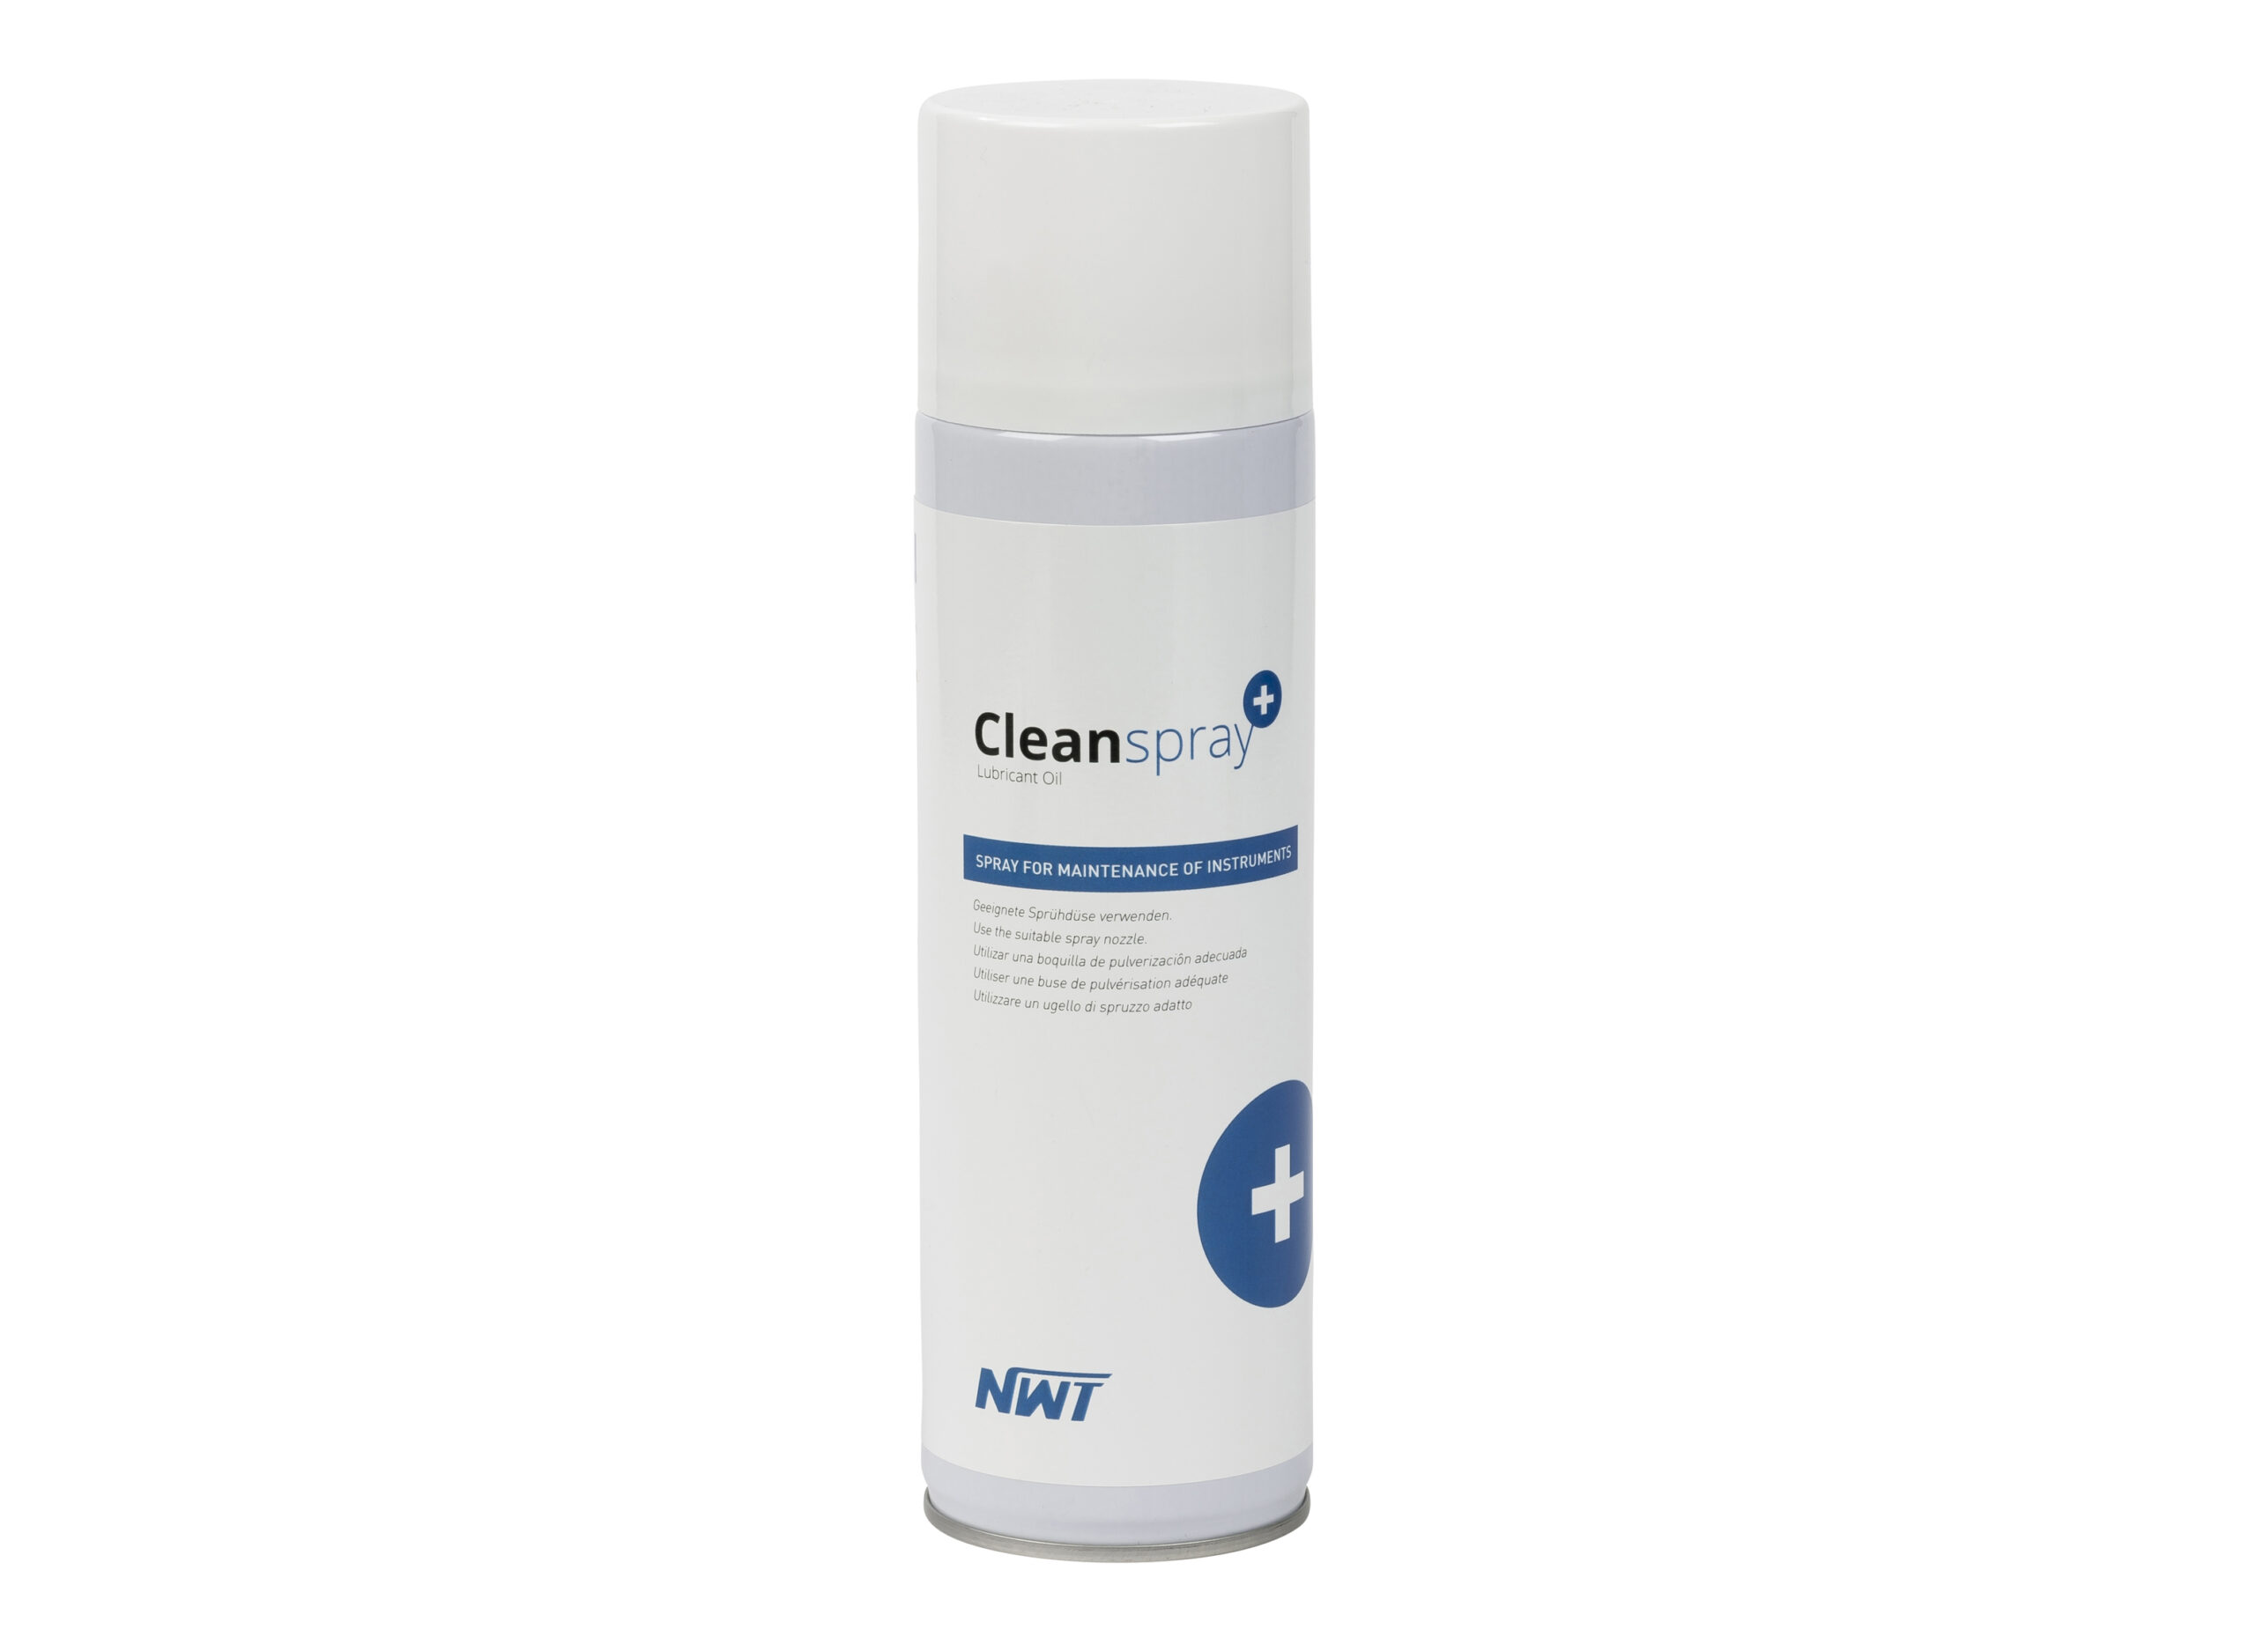 cleanspray_nwt_pedimed